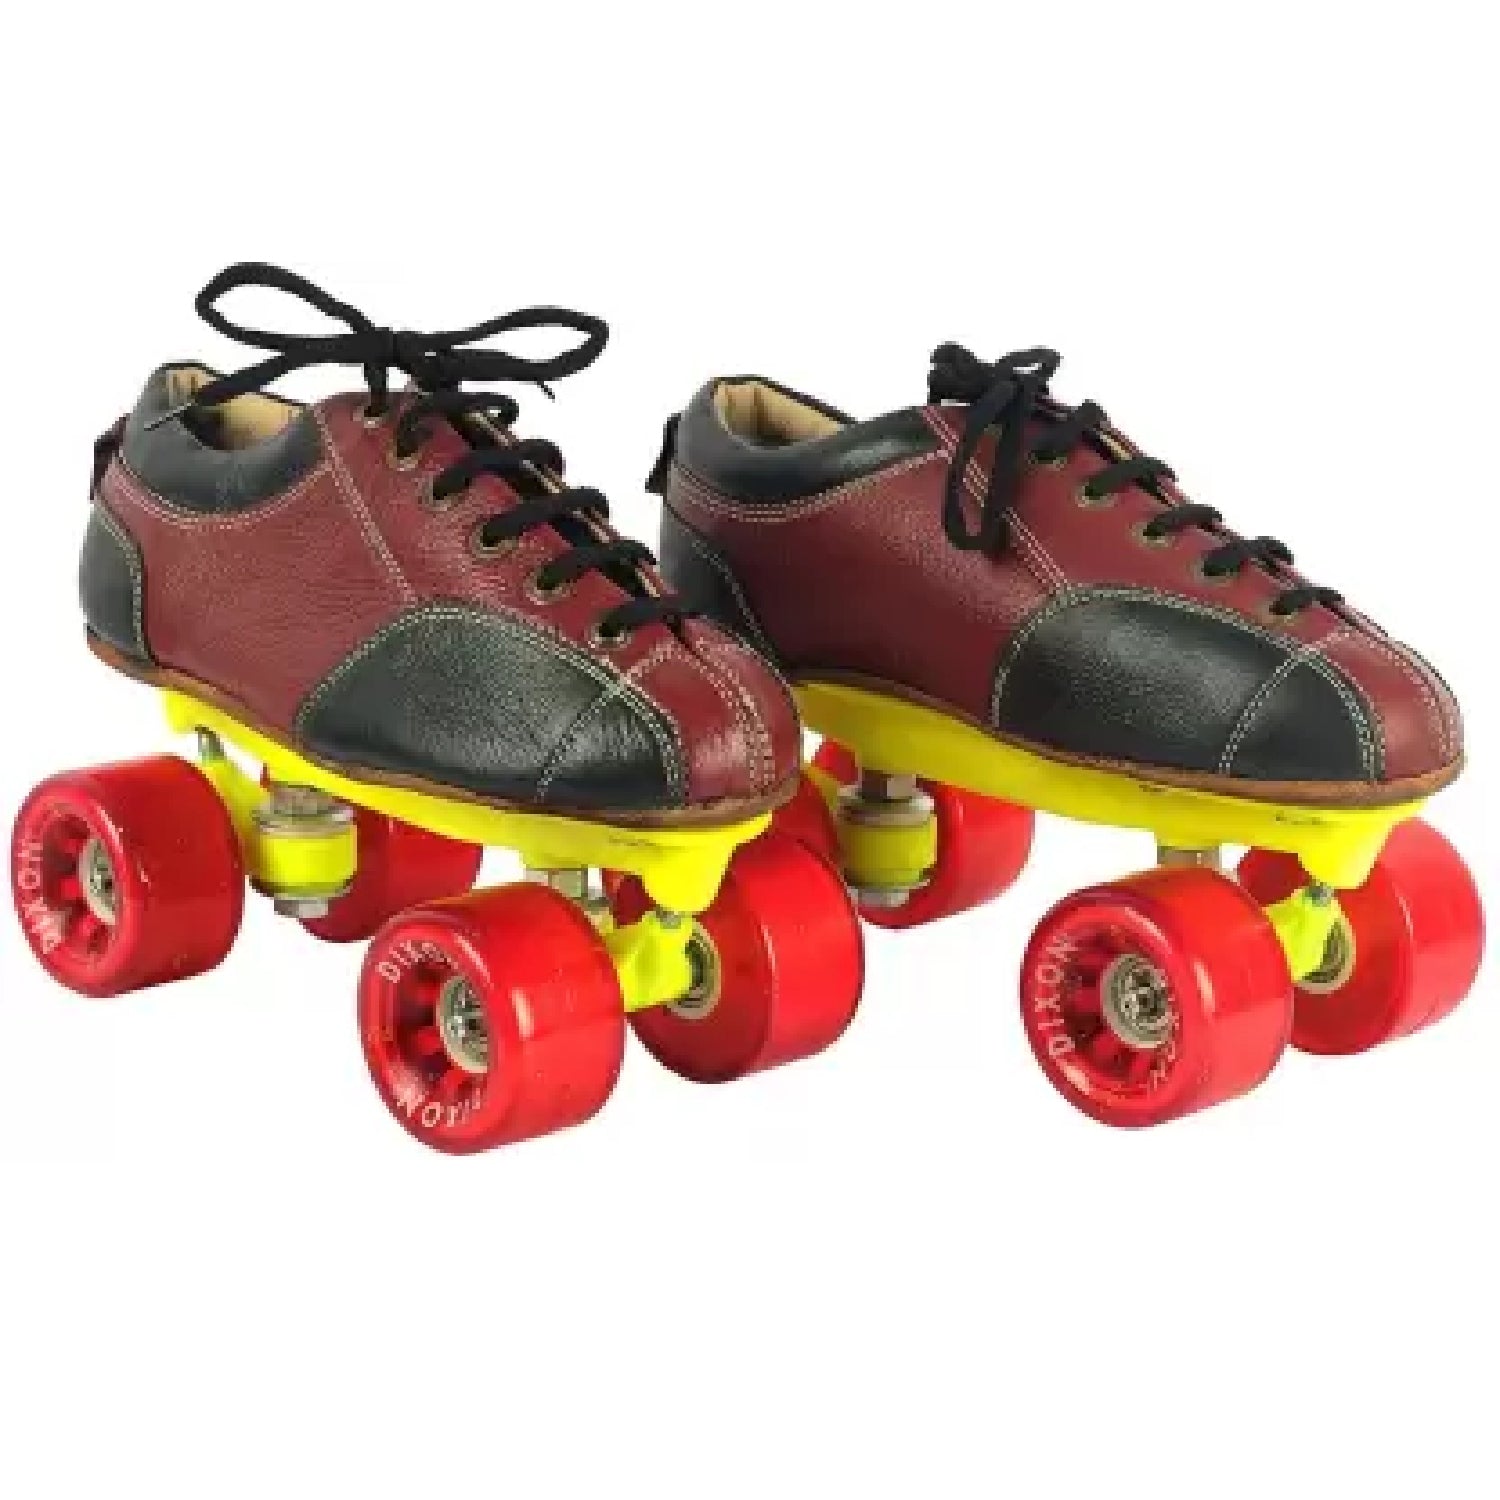 Roller Skate Shoes, Skateboard Shoes, Skate Shoes Leathe